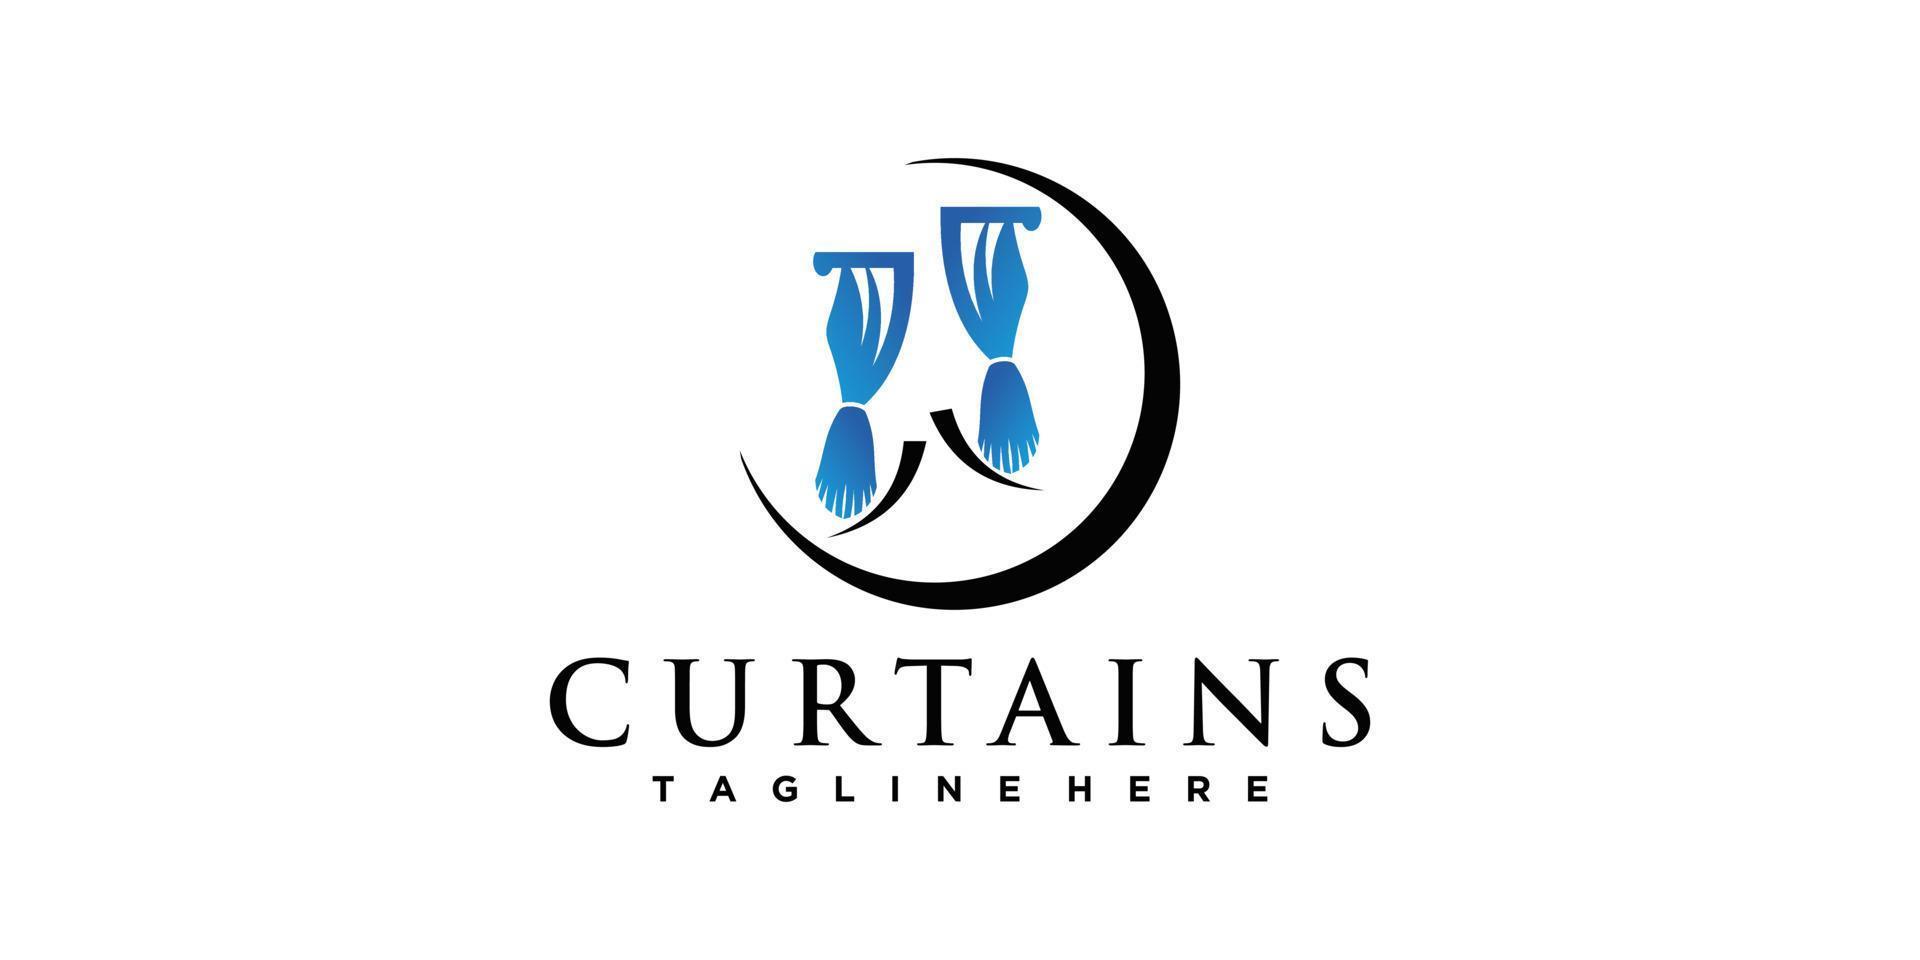 Curtain fabric logo design template inspiration simple and unique Premium Vector